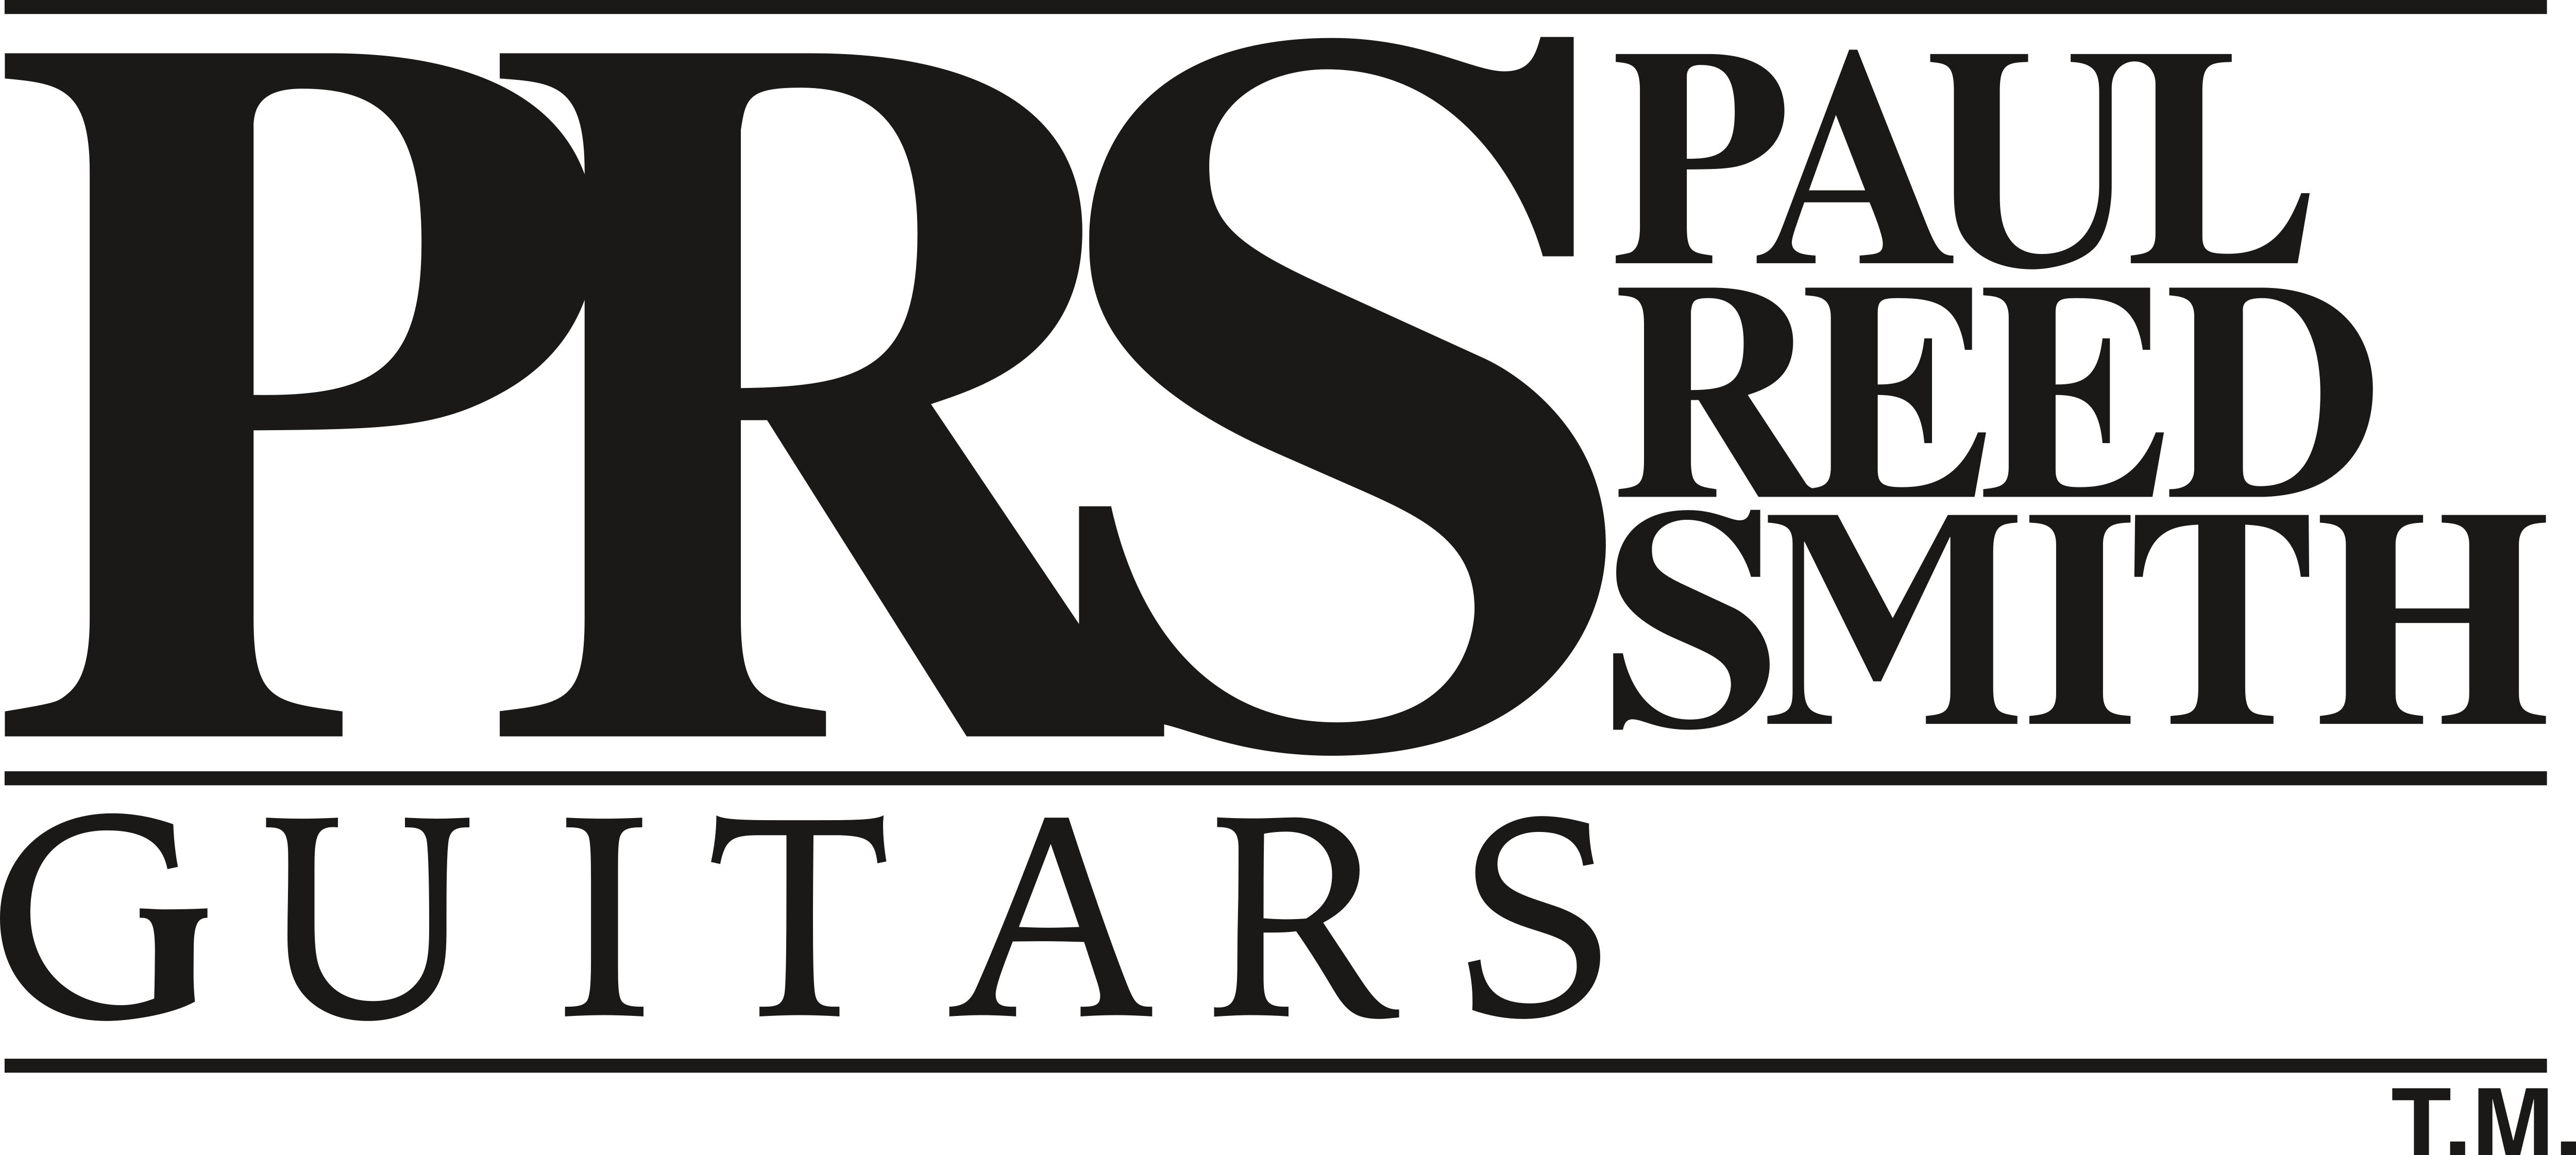 PRS Guitars – Logos Download